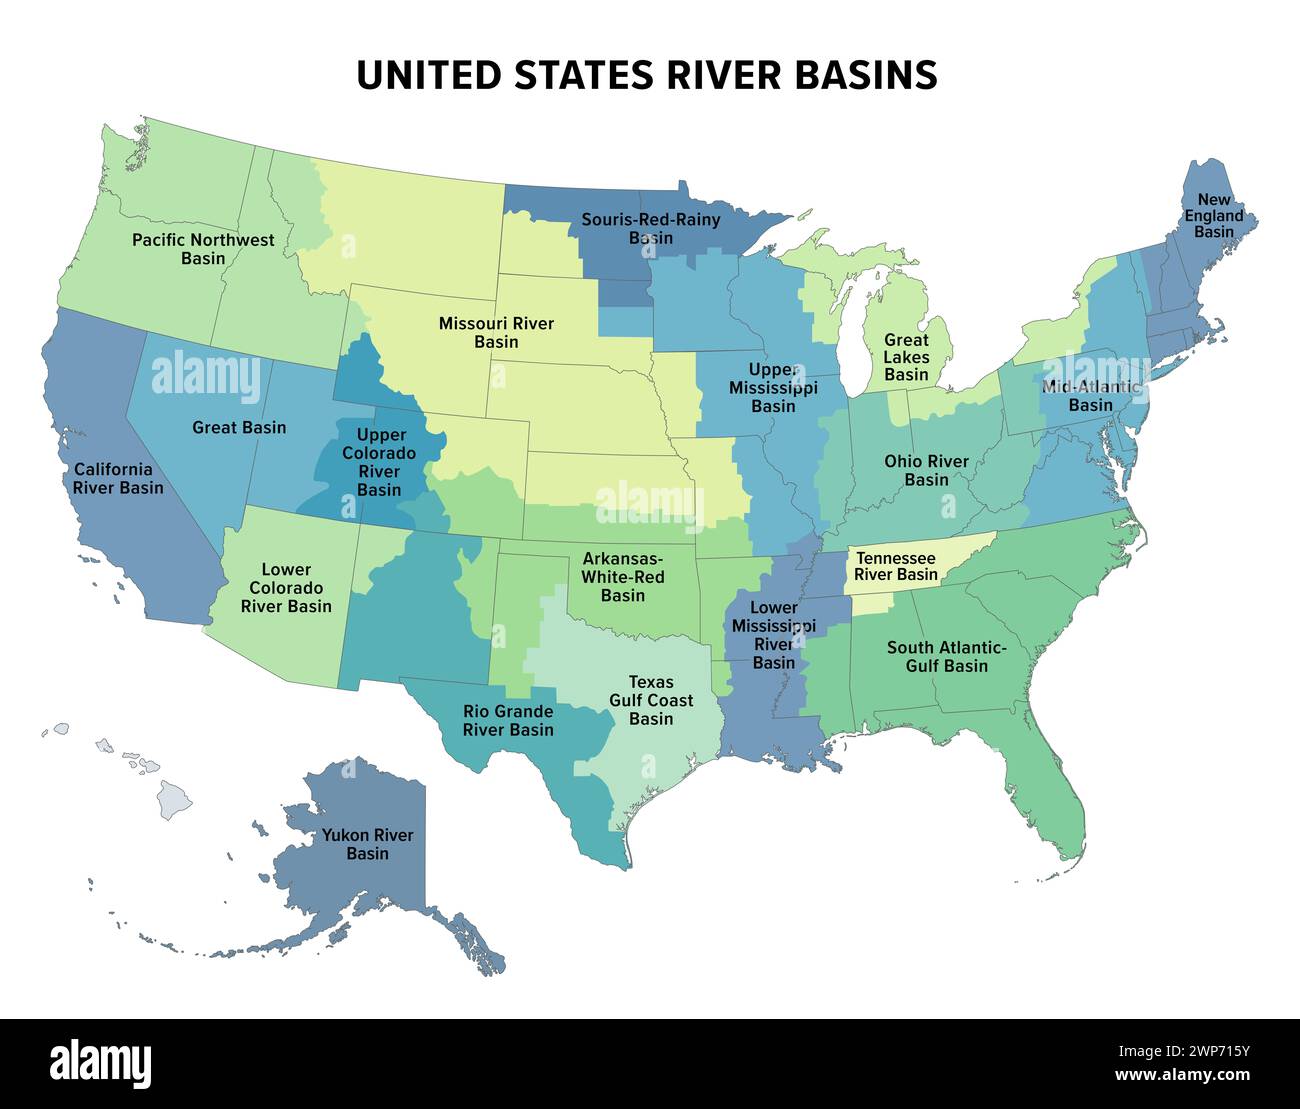 Die wichtigsten Einzugsgebiete der Vereinigten Staaten, politische Karte. 19 große Flusseinzugsgebiete, in verschiedenen Farben hervorgehoben. Auch mit den Grenzen der staaten. Stockfoto